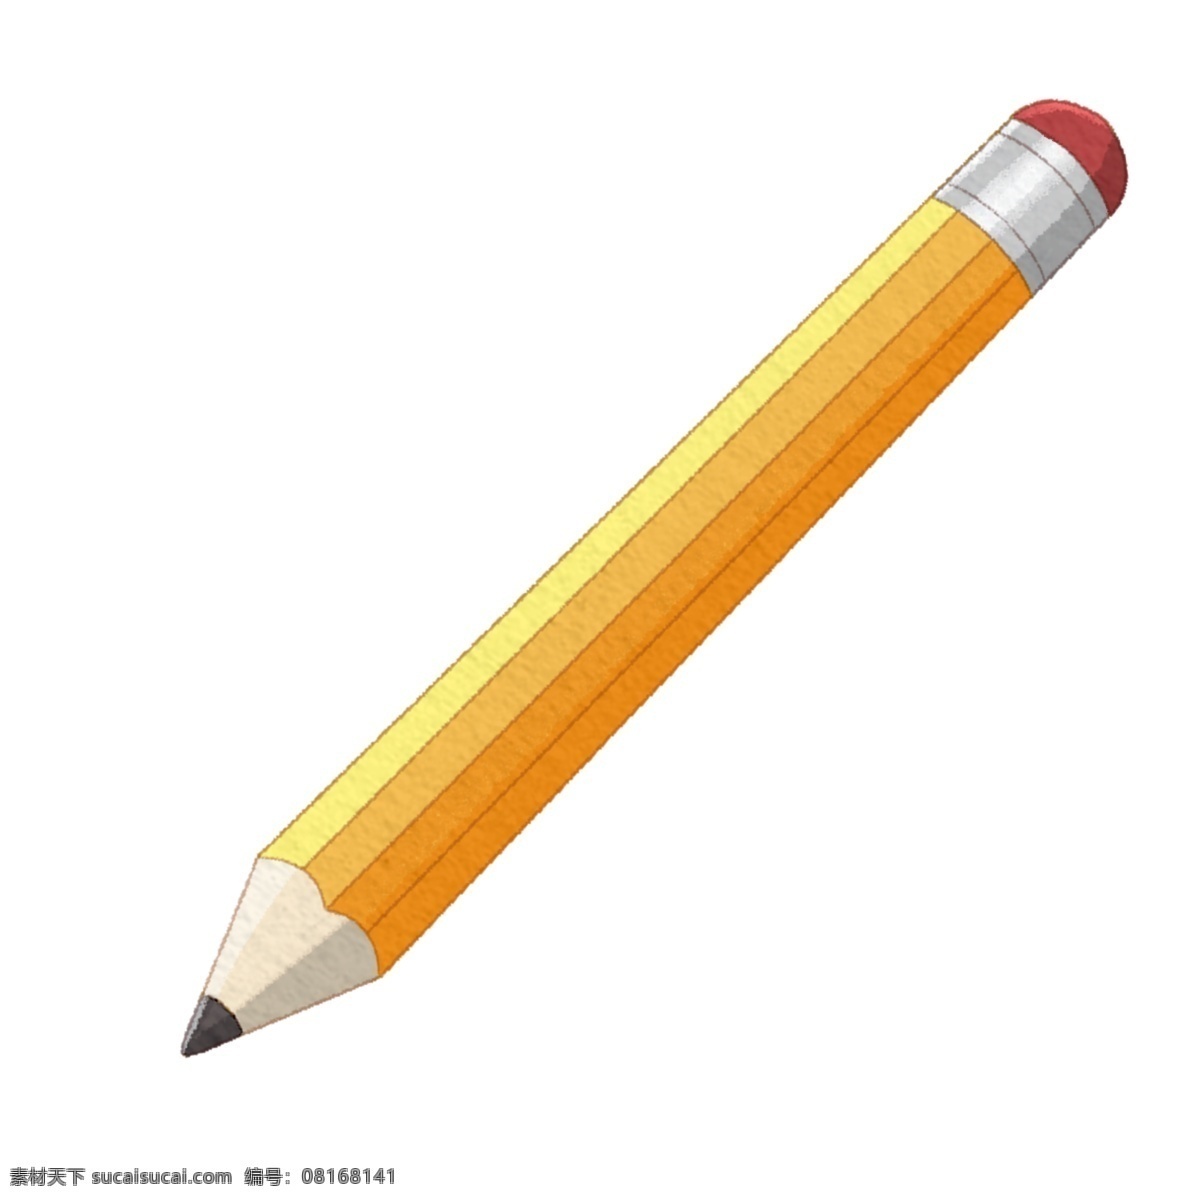 黄色 文具 铅笔 插画 带橡皮 学习 用品